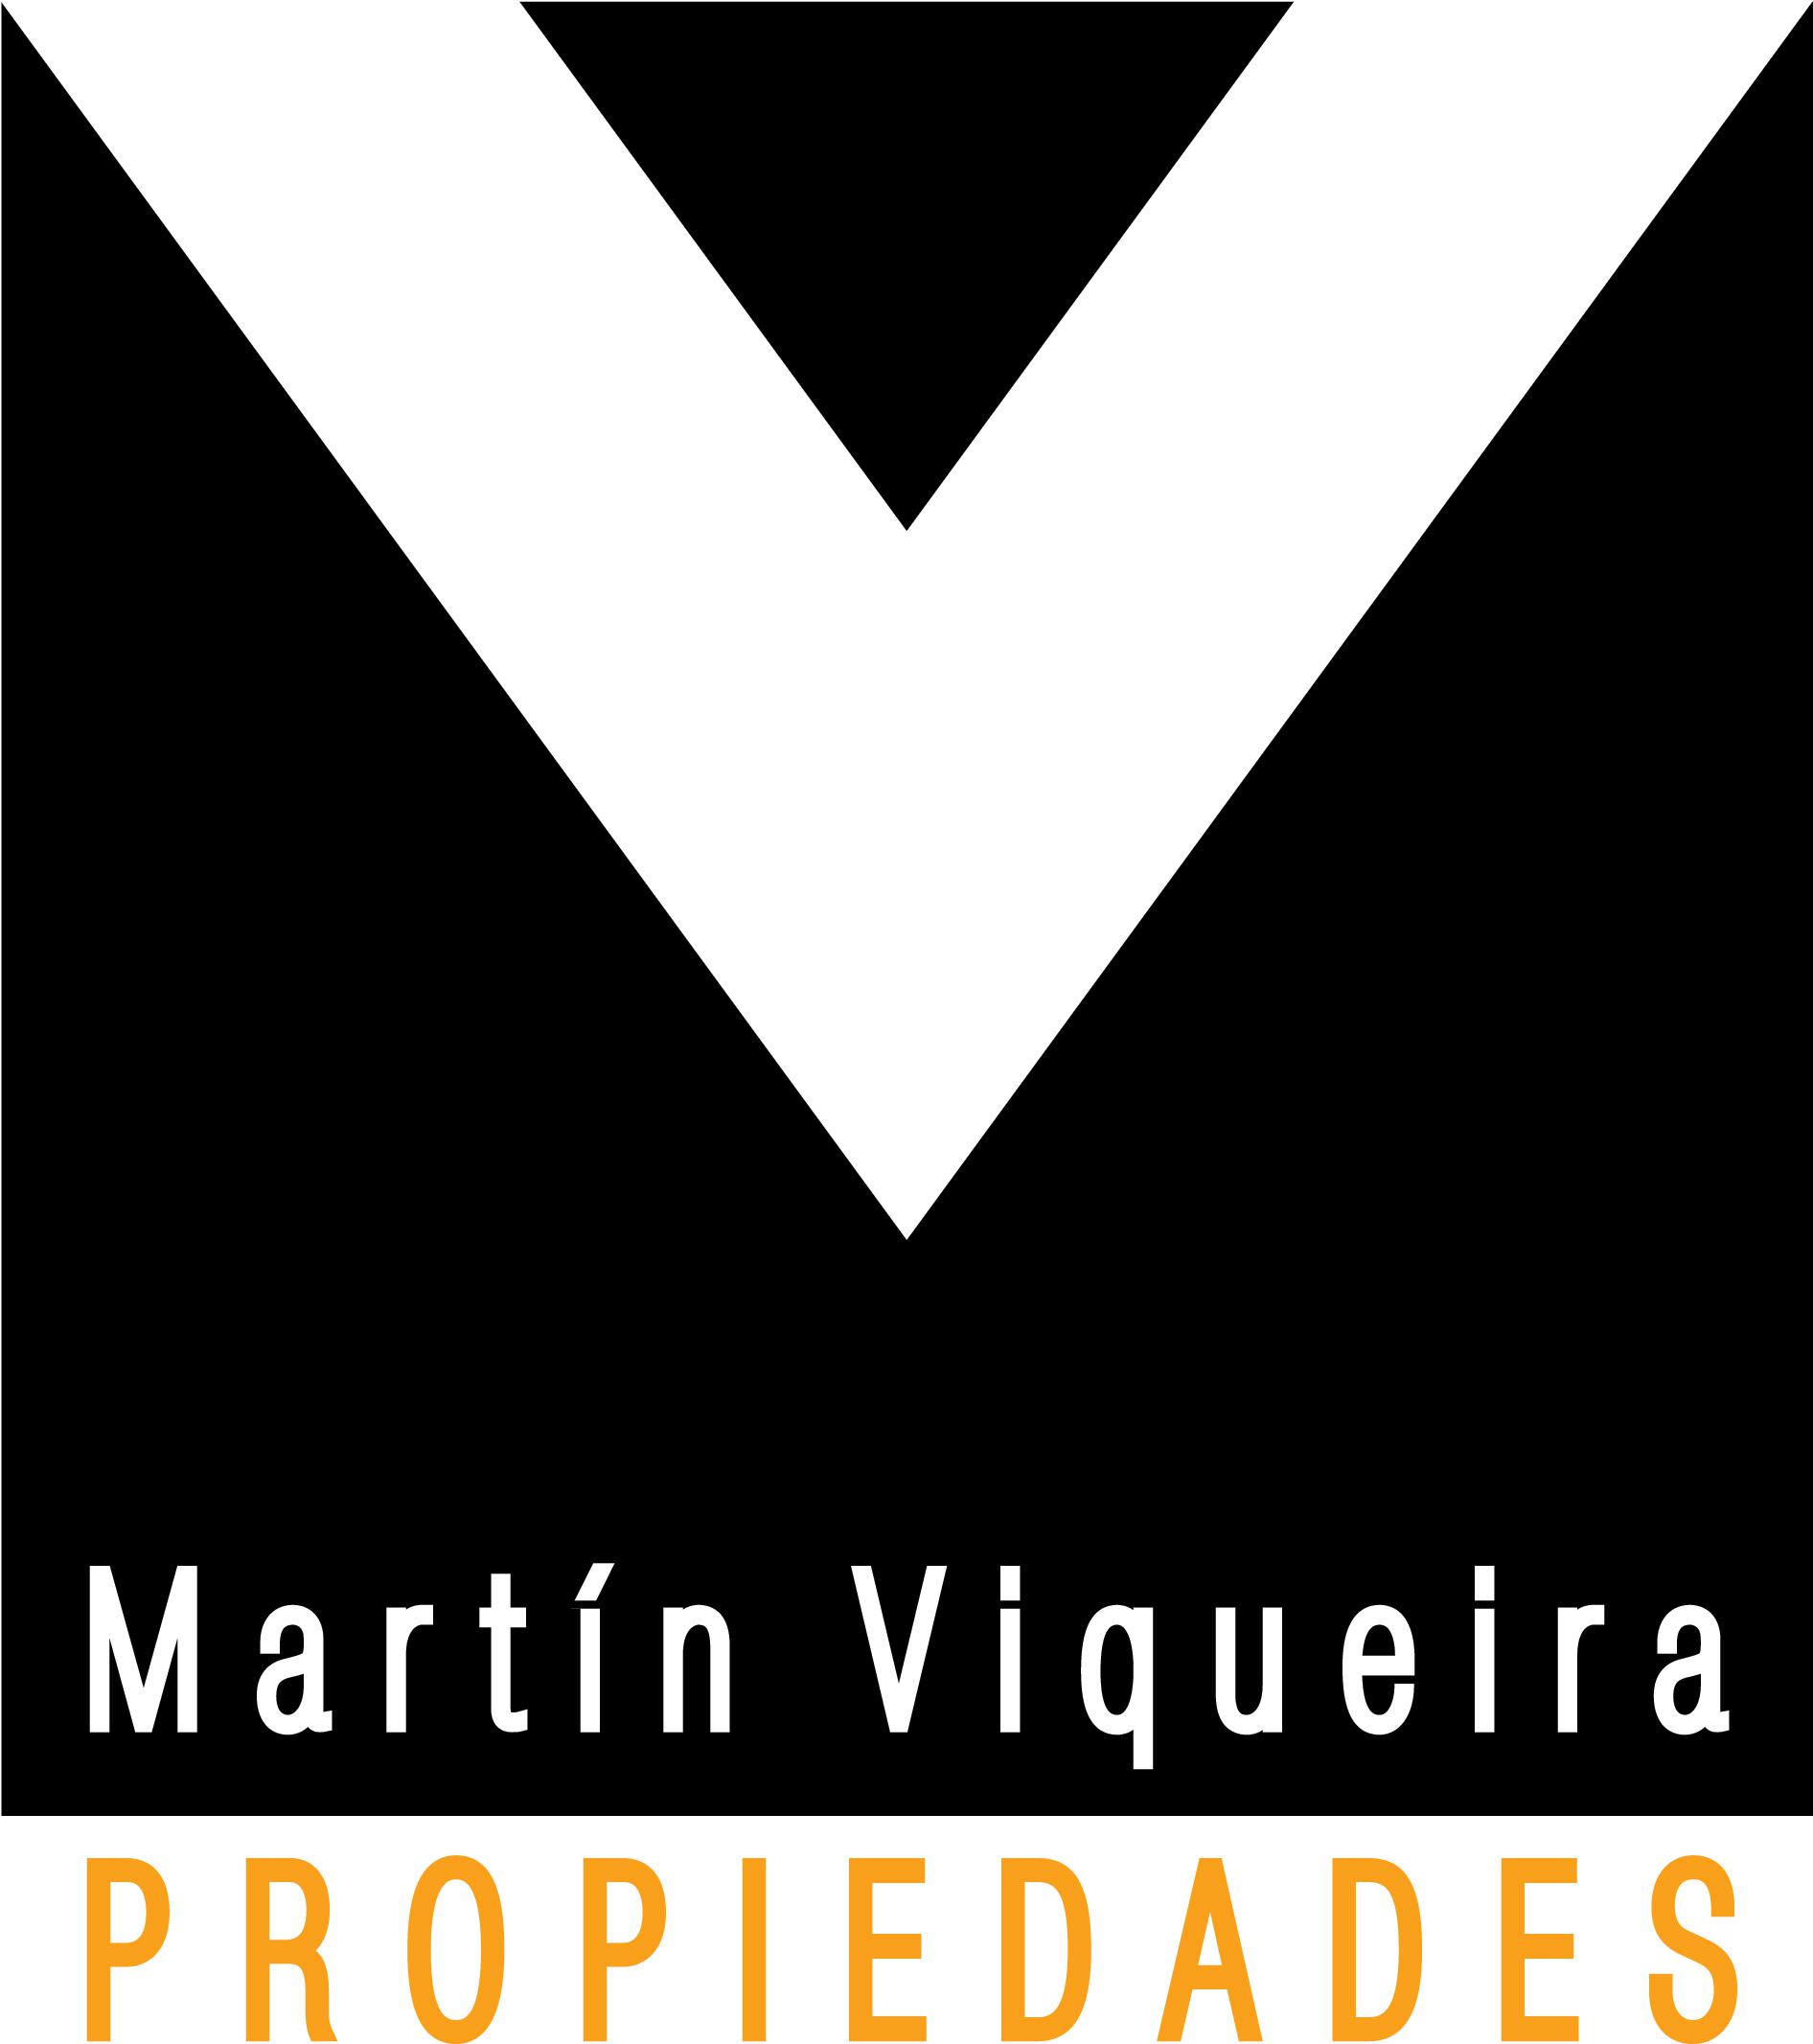 Martin Viqueira